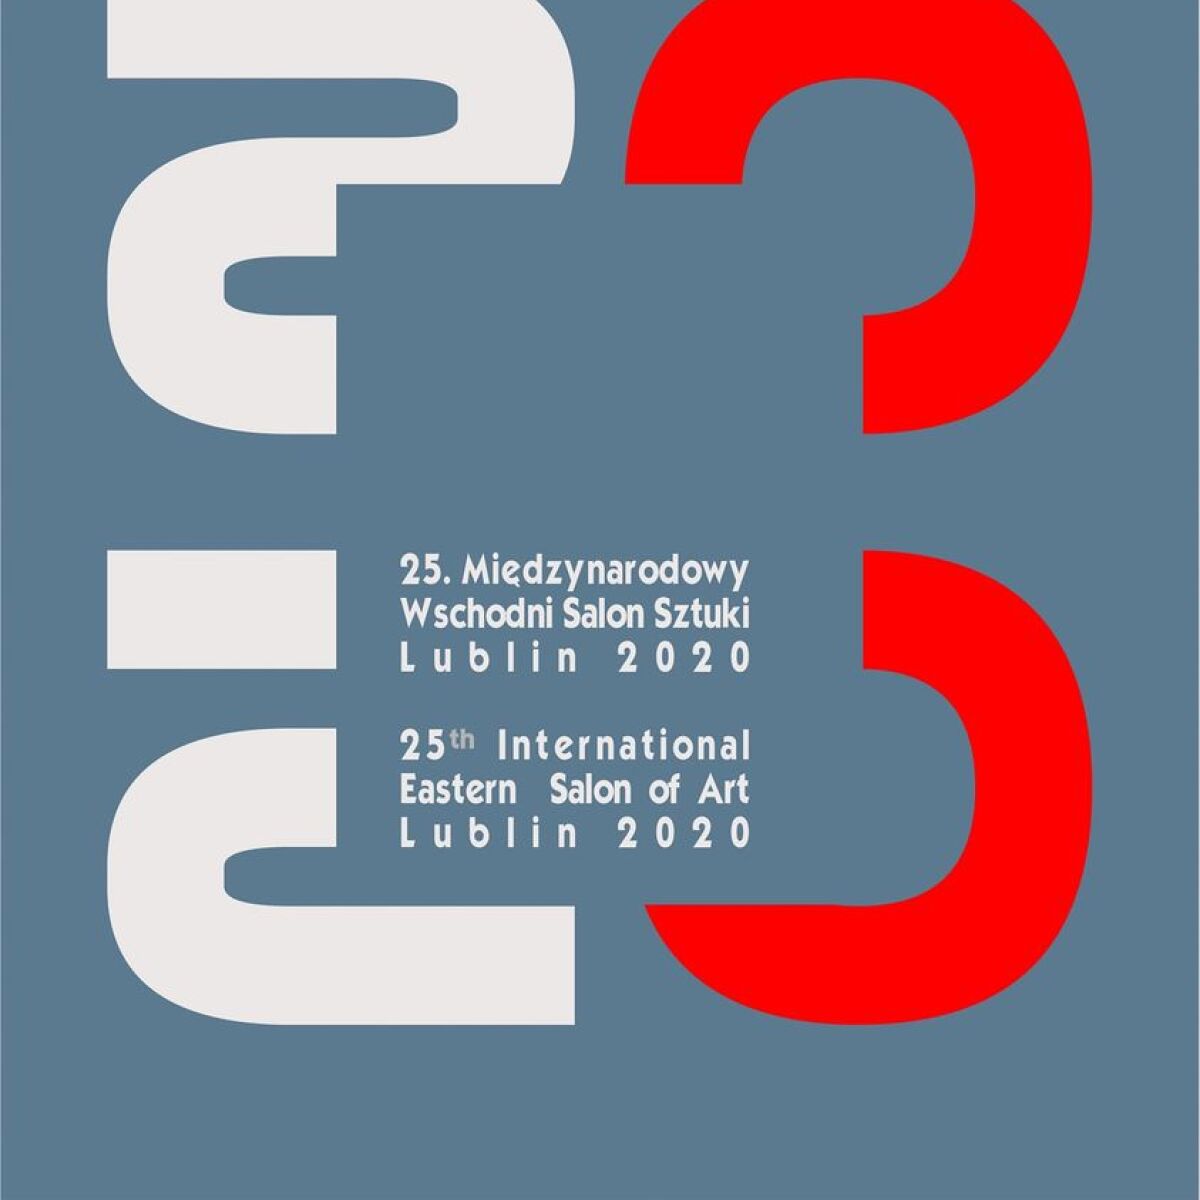 25 Międzynarodowy Wschodni Salonu Sztuki - Lublin 2020.